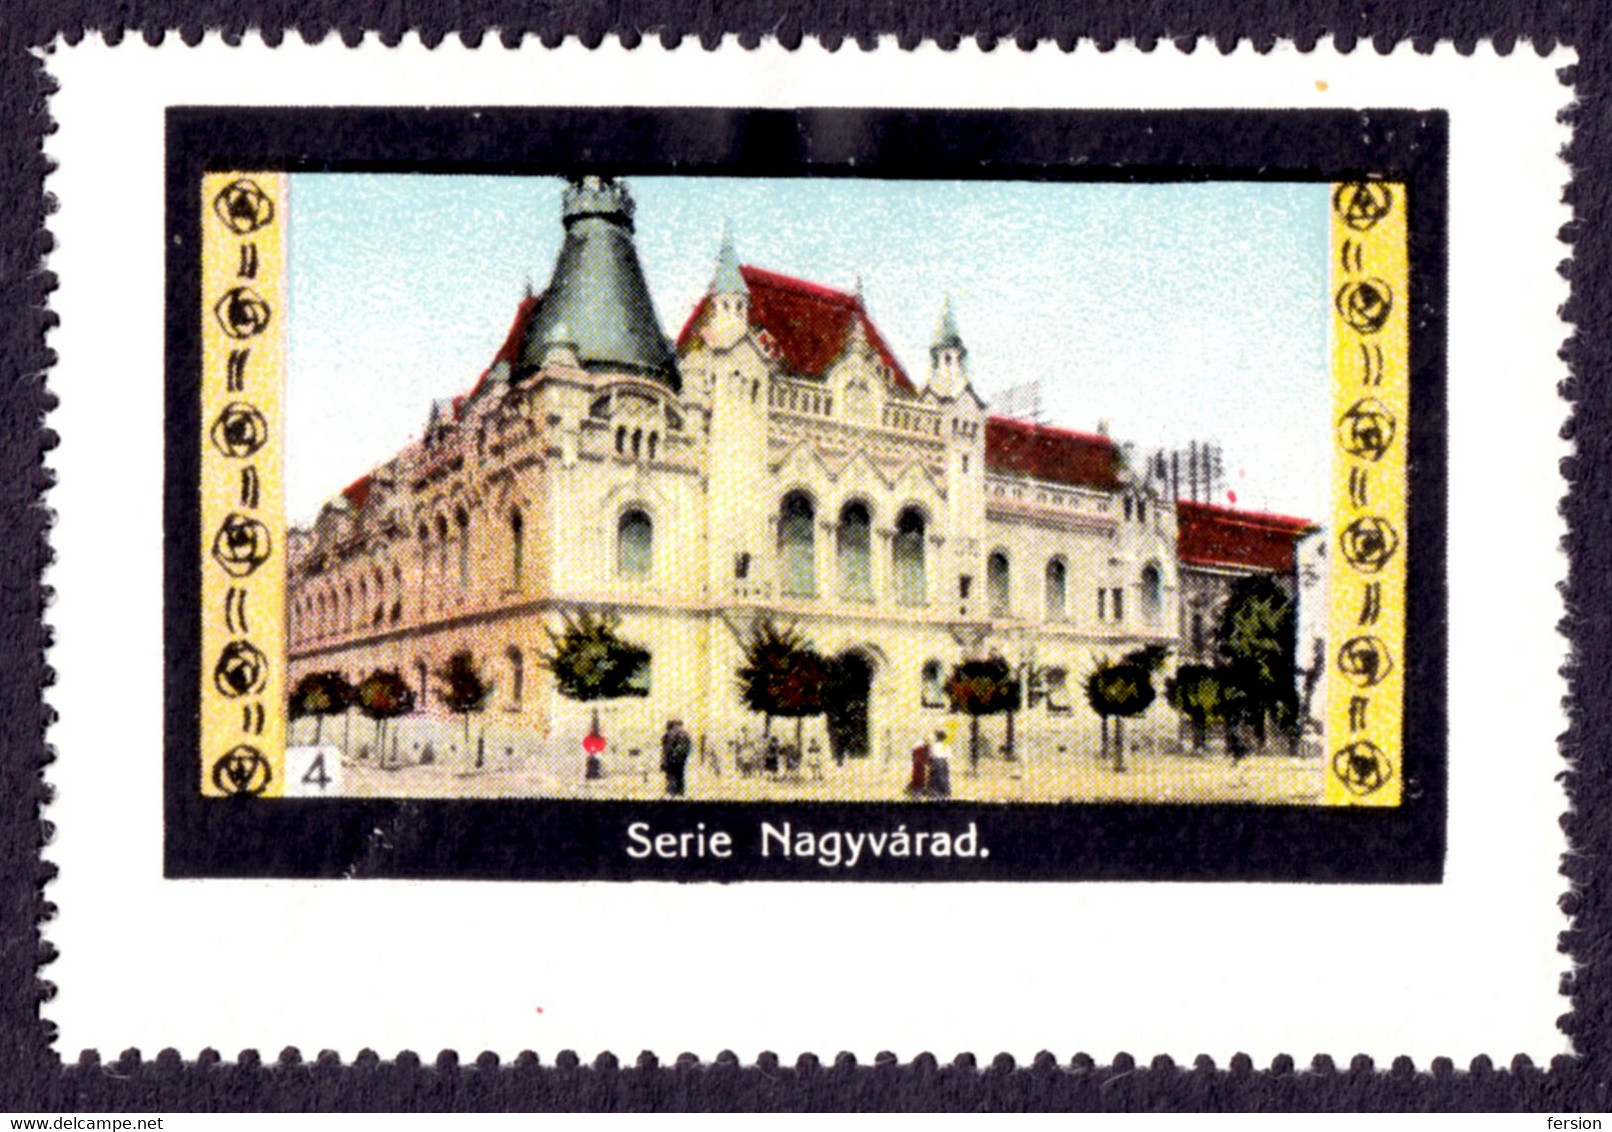 NAGYVÁRAD ORADEA Greek Catholic Episcopal Palace CHRISTIANITY - Romania Hungary Transylvania 1910's - MH - Transylvania